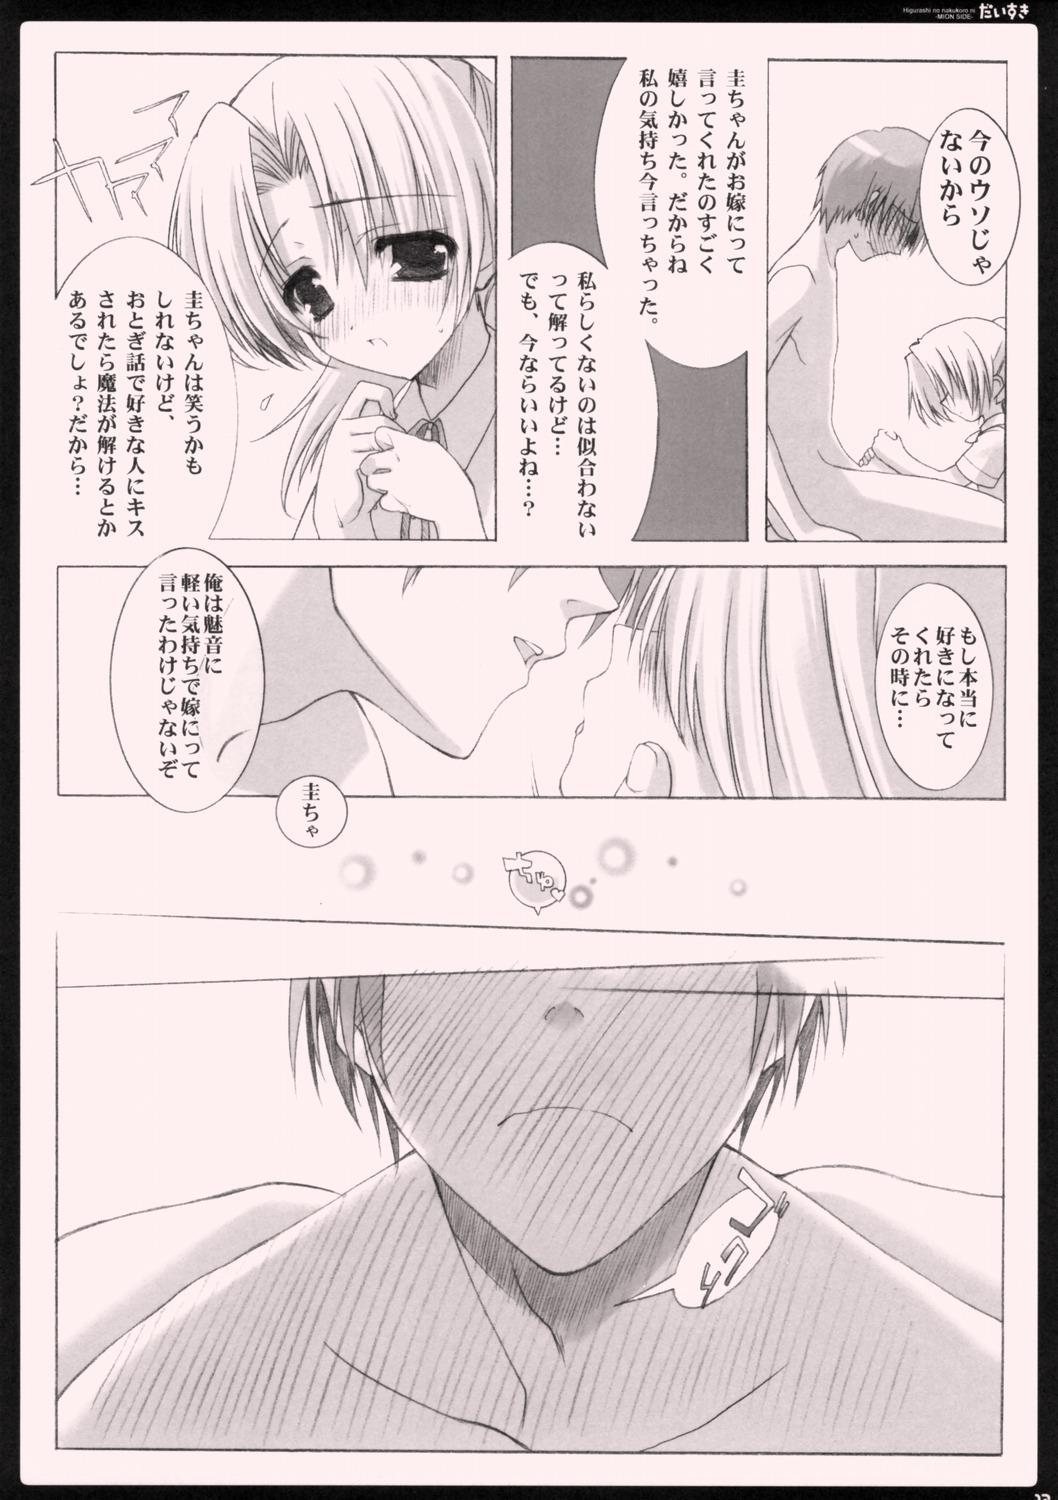 Hot Women Having Sex Daisuki. - Higurashi no naku koro ni Amateursex - Page 11